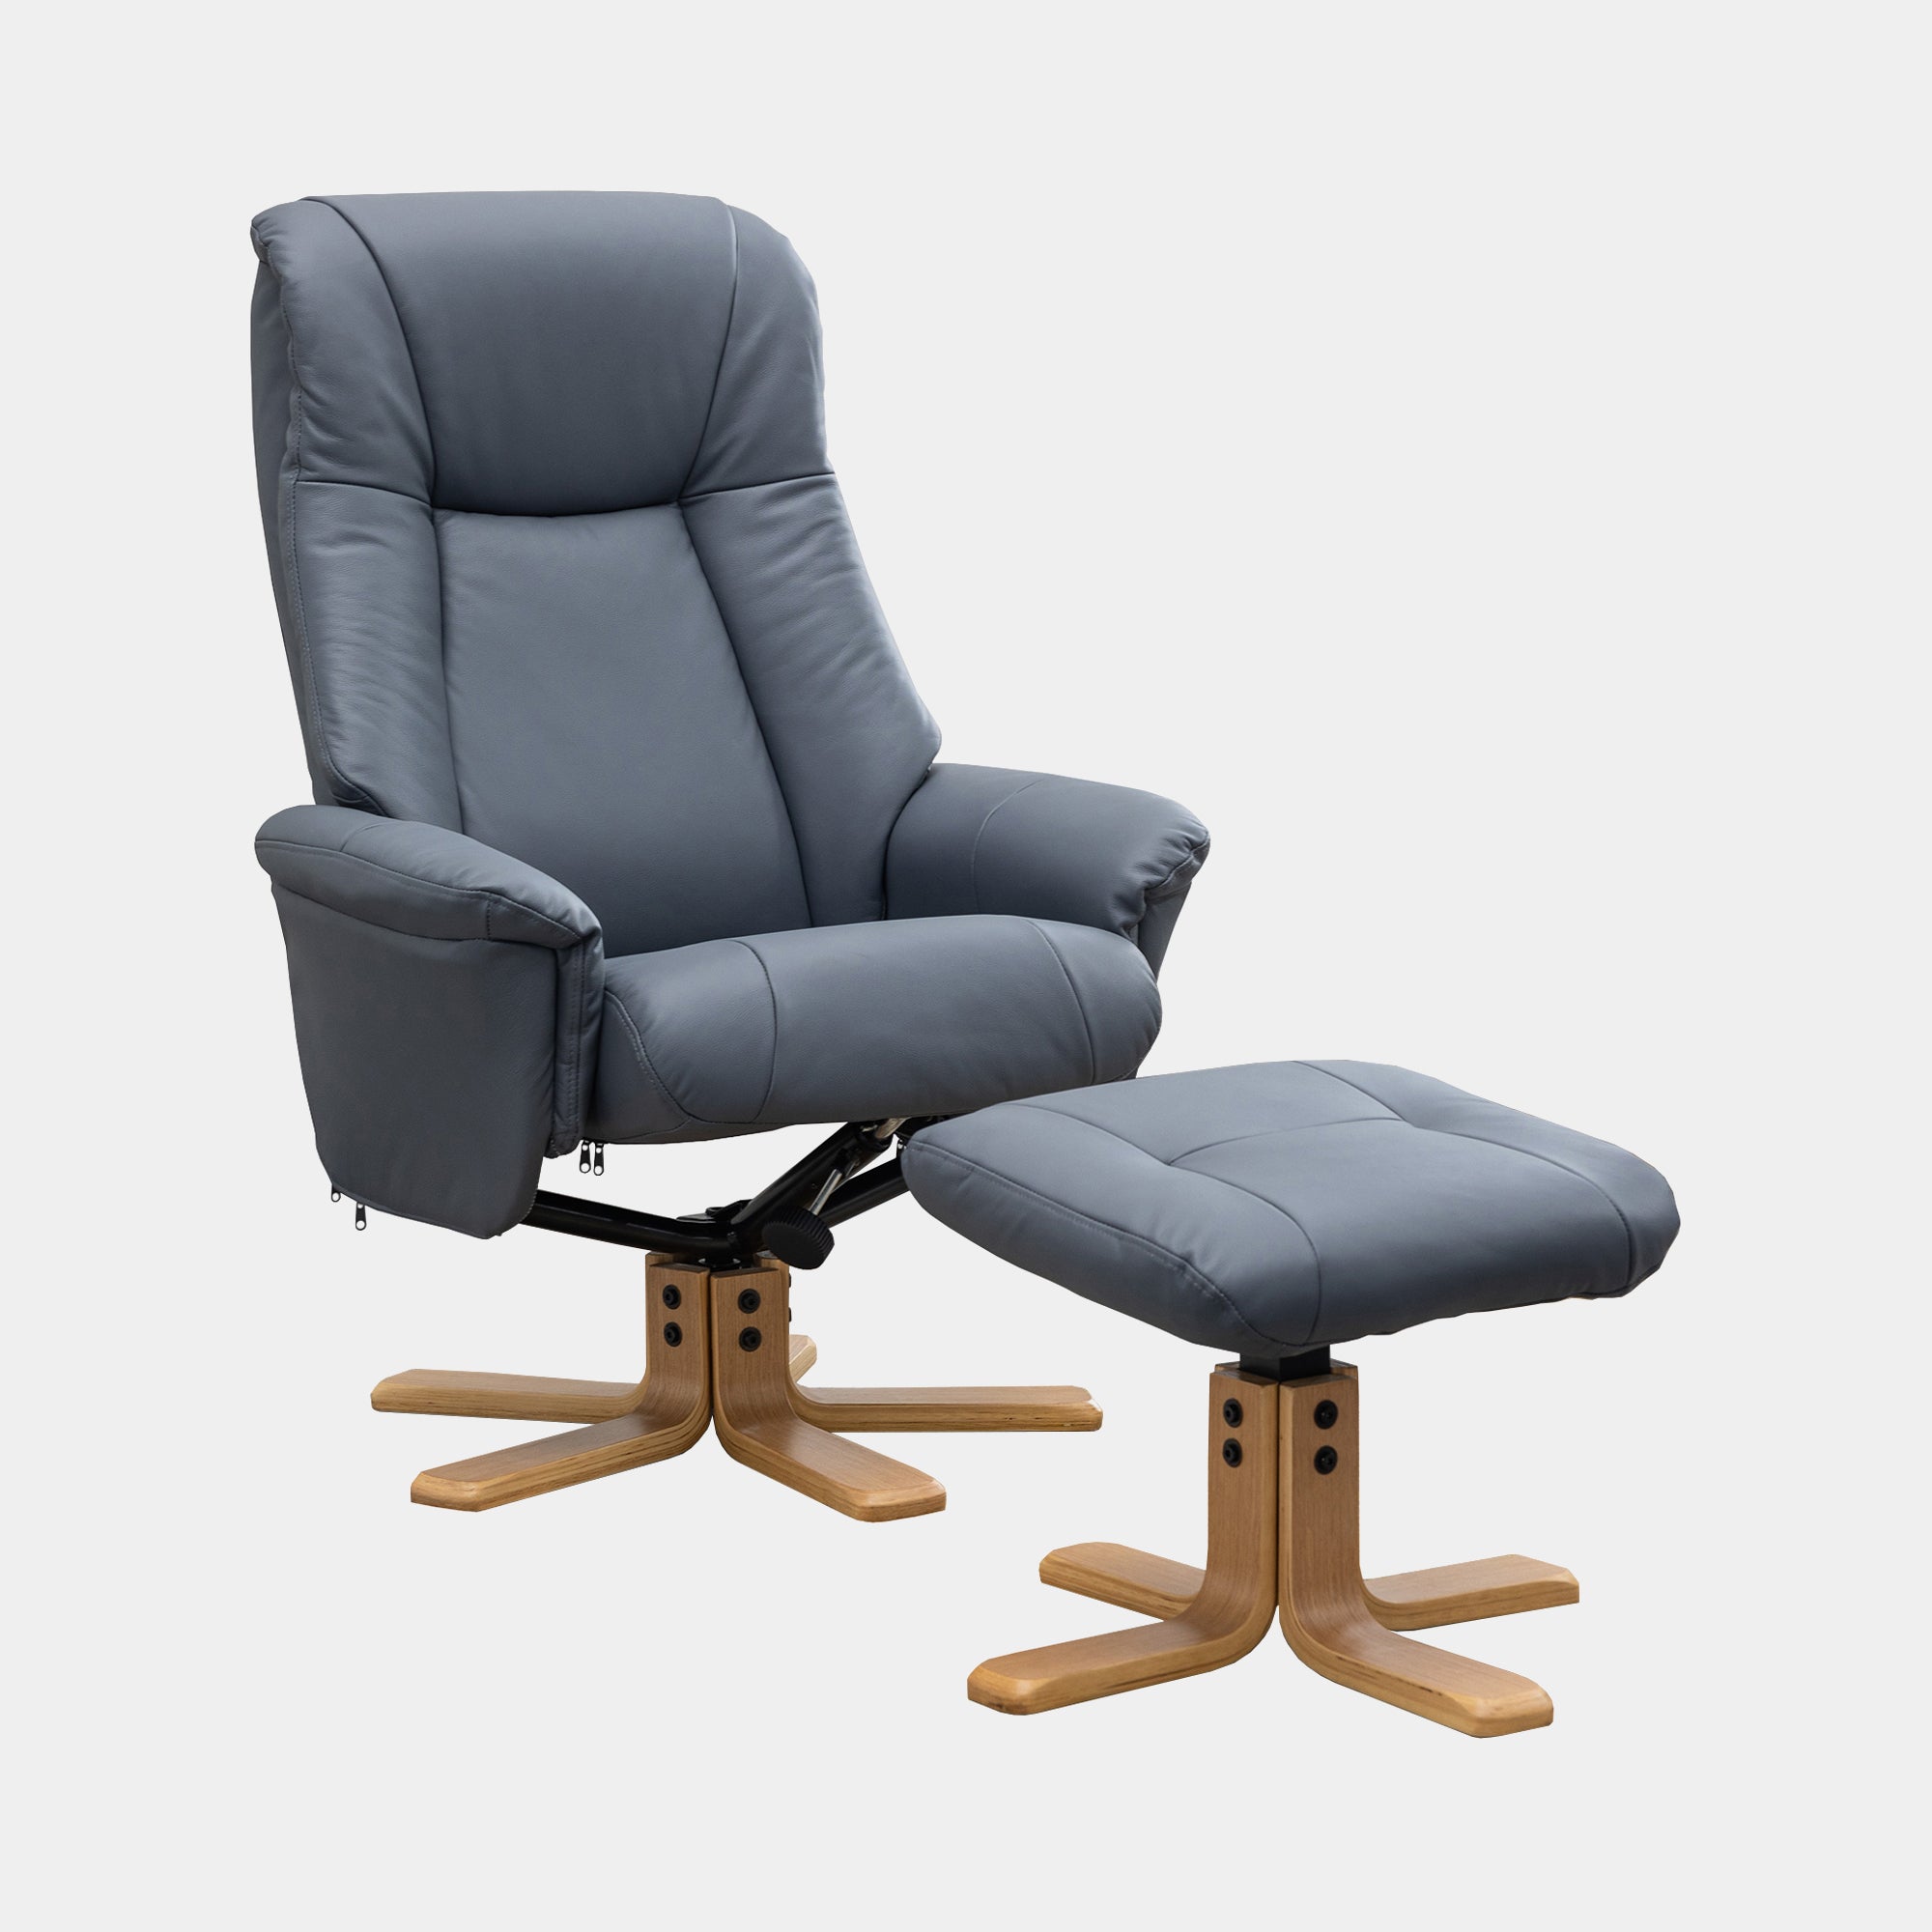 Sierra - Swivel Chair & Stool In Leather Match Petrol Blue With Mid Oak Base